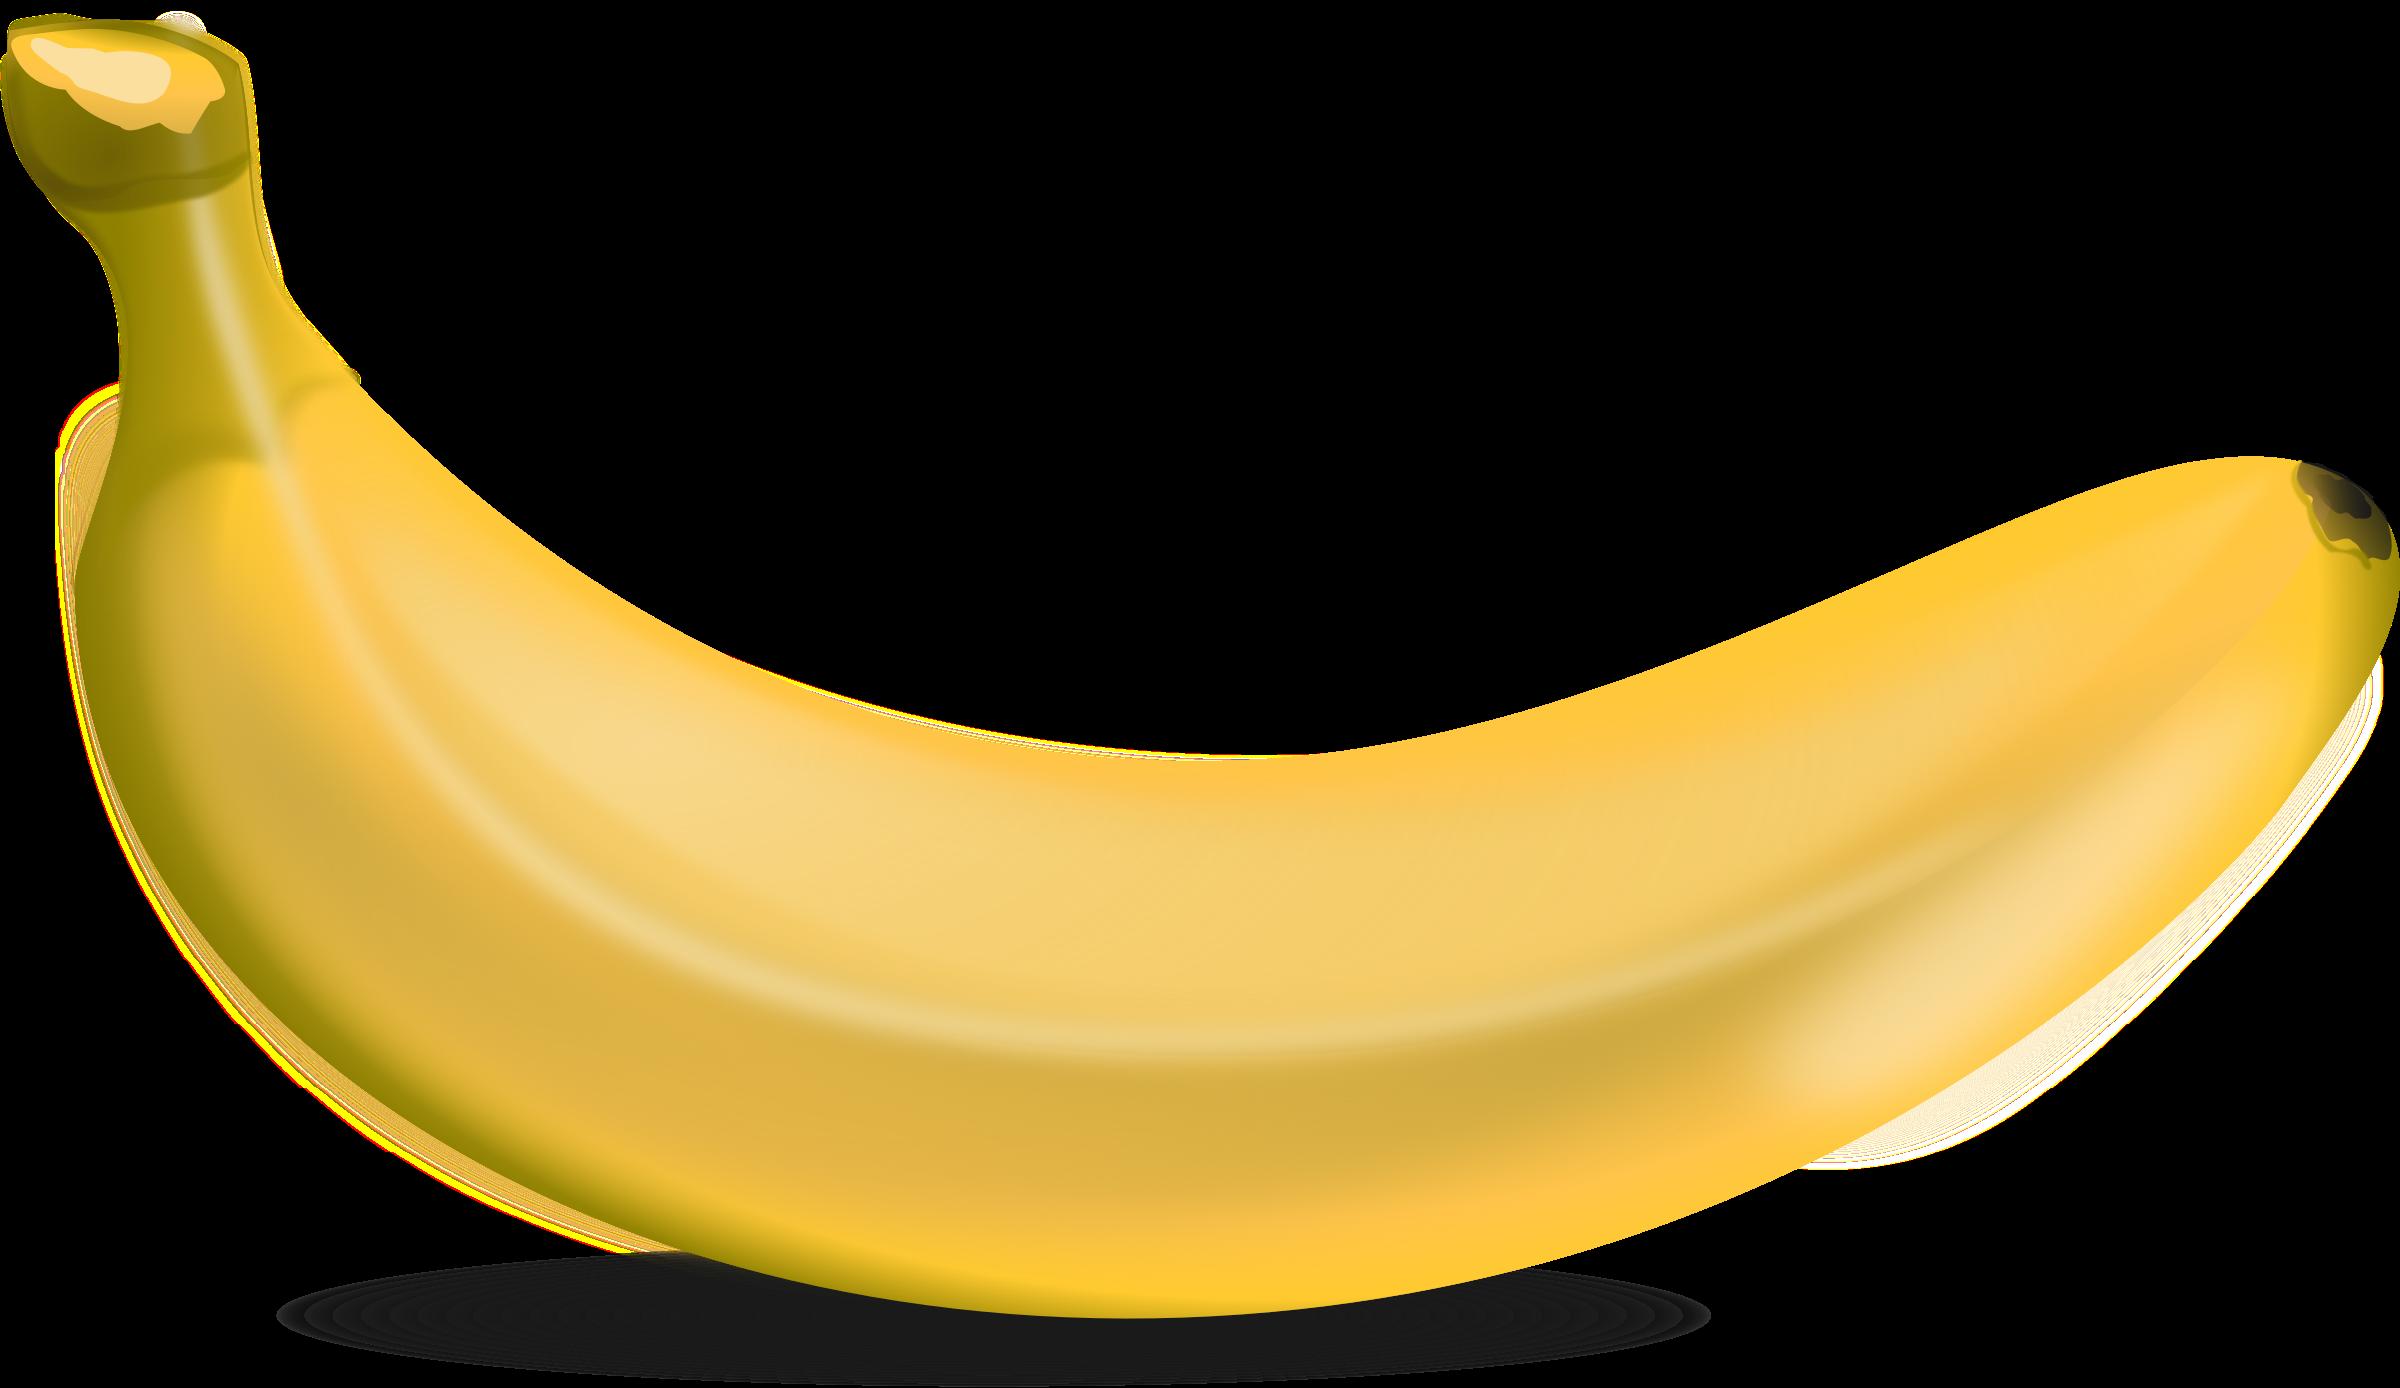 Download Banana Clip Art Free HQ PNG Image | FreePNGImg